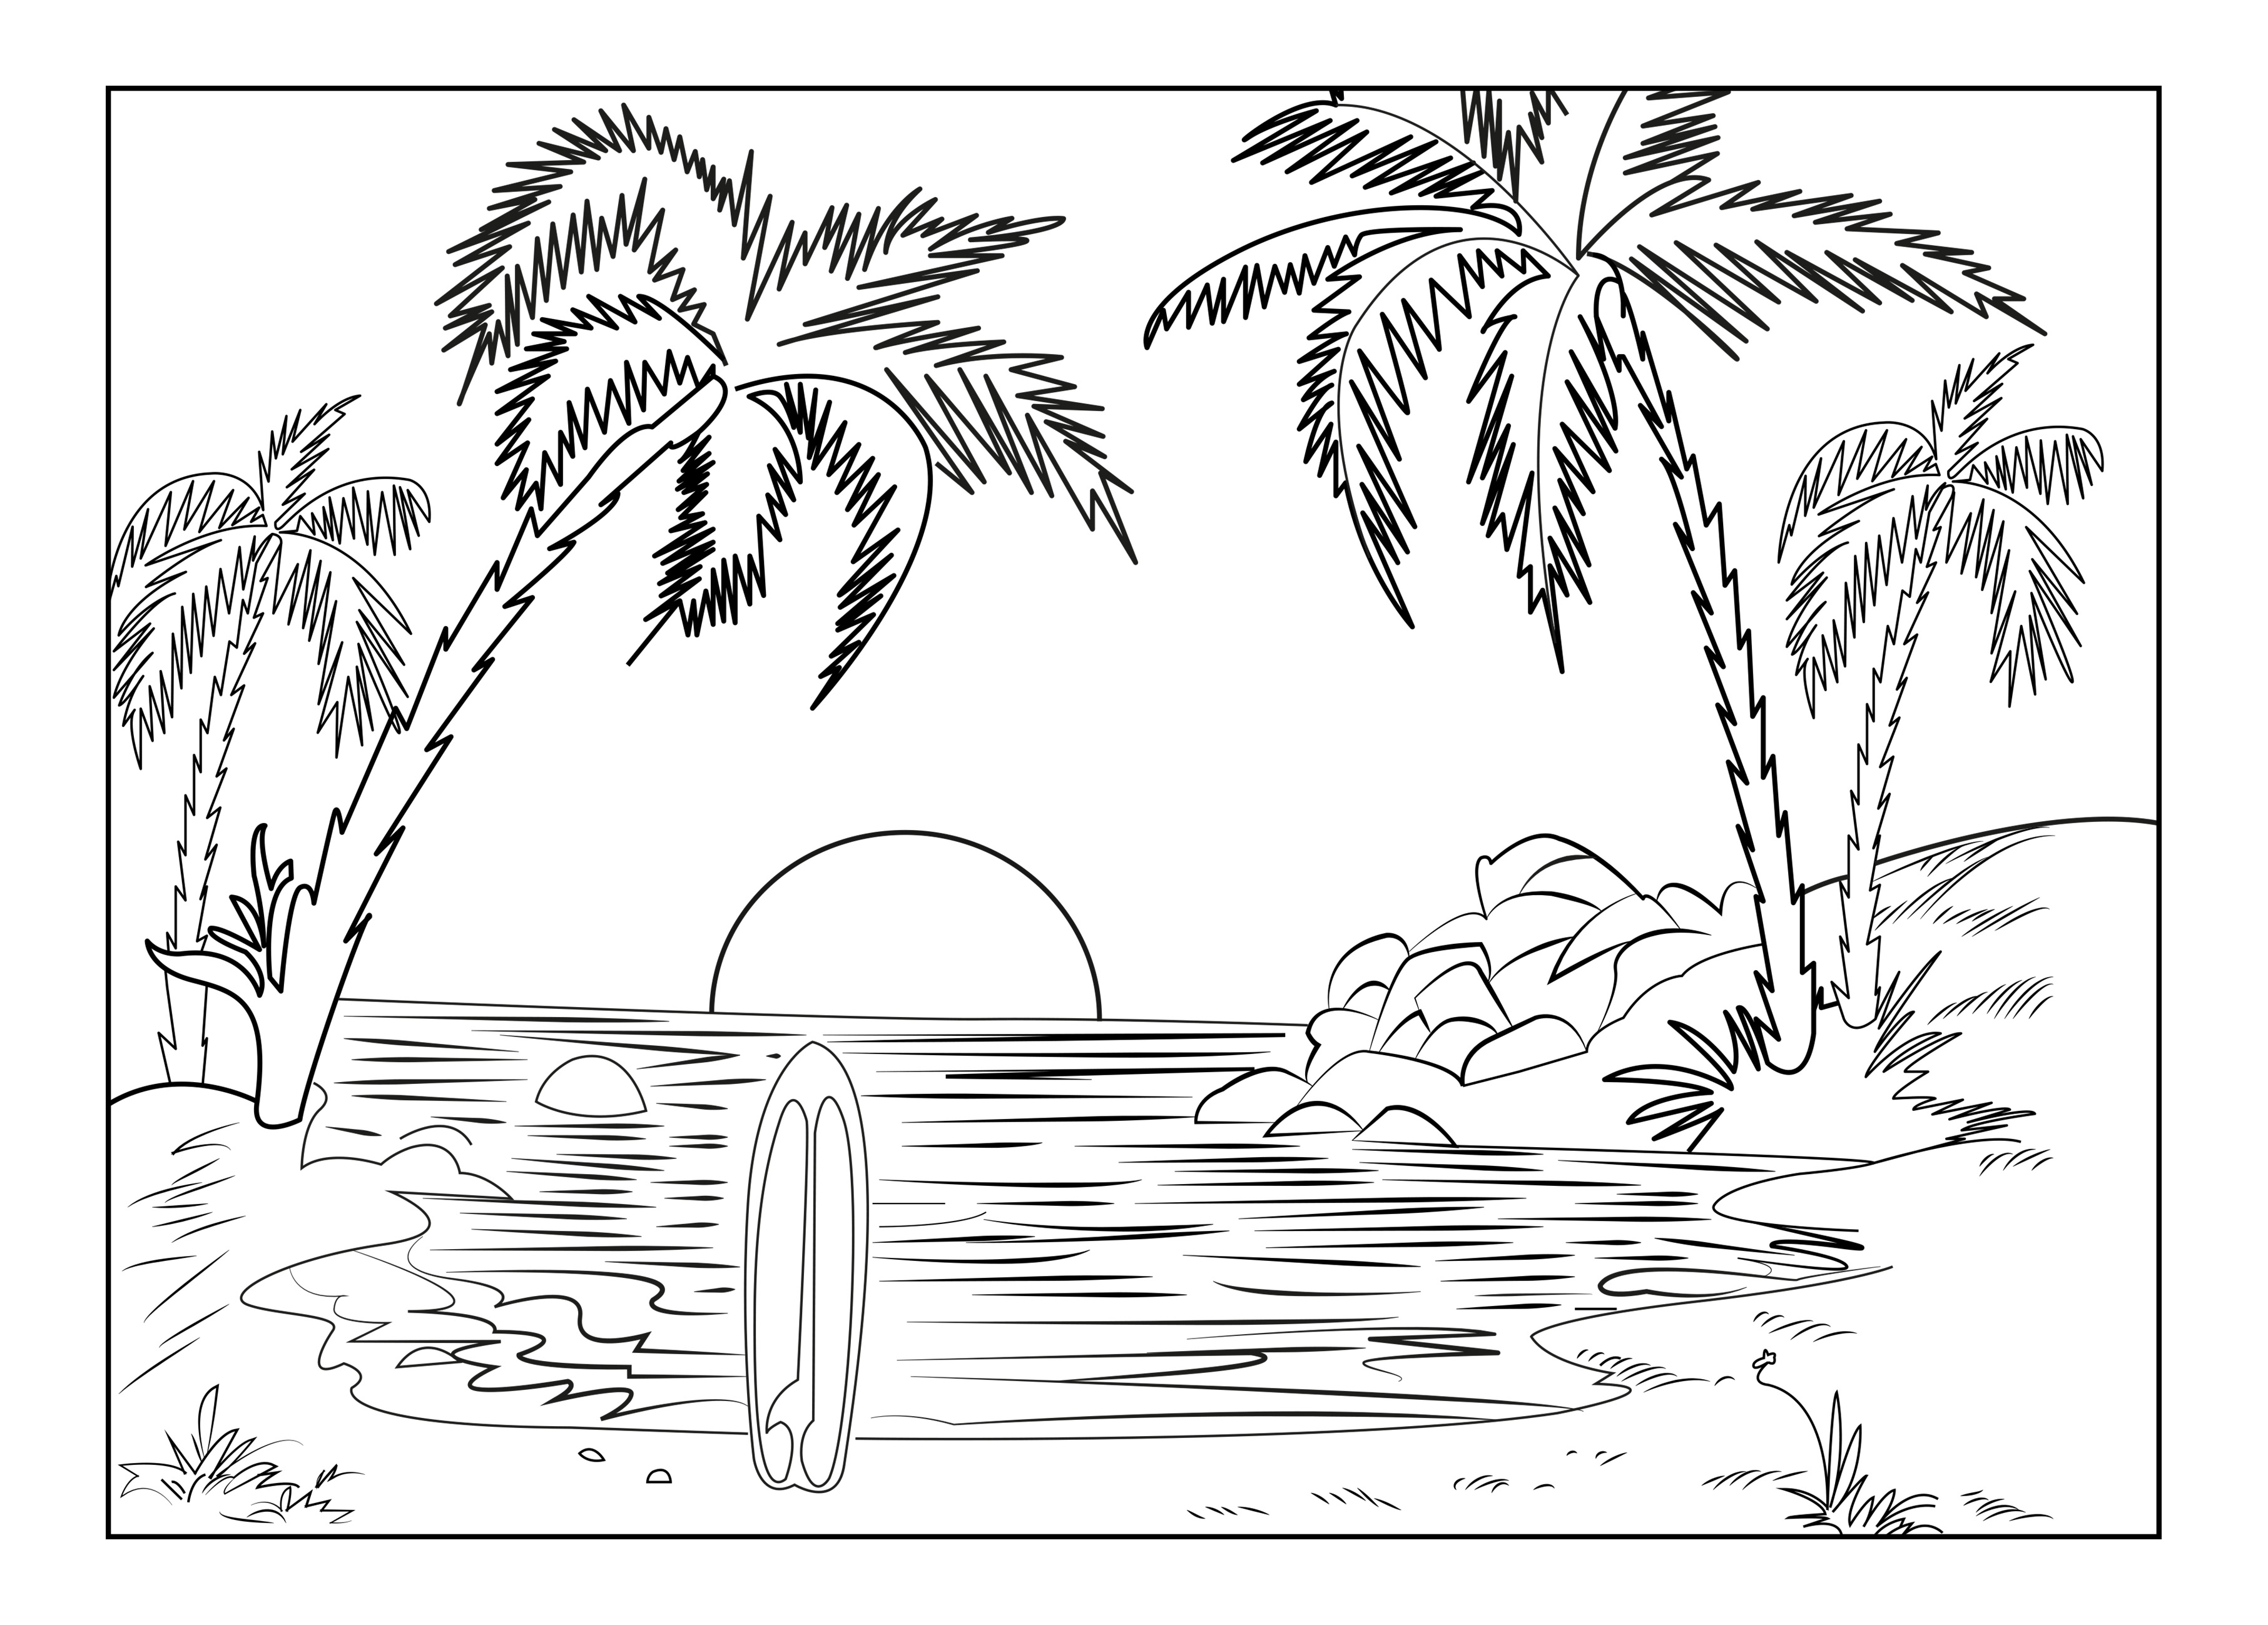 A praia de uma ilha paradisíaca, com palmeiras, uma prancha de surf e o pôr do sol, Artista : Celine